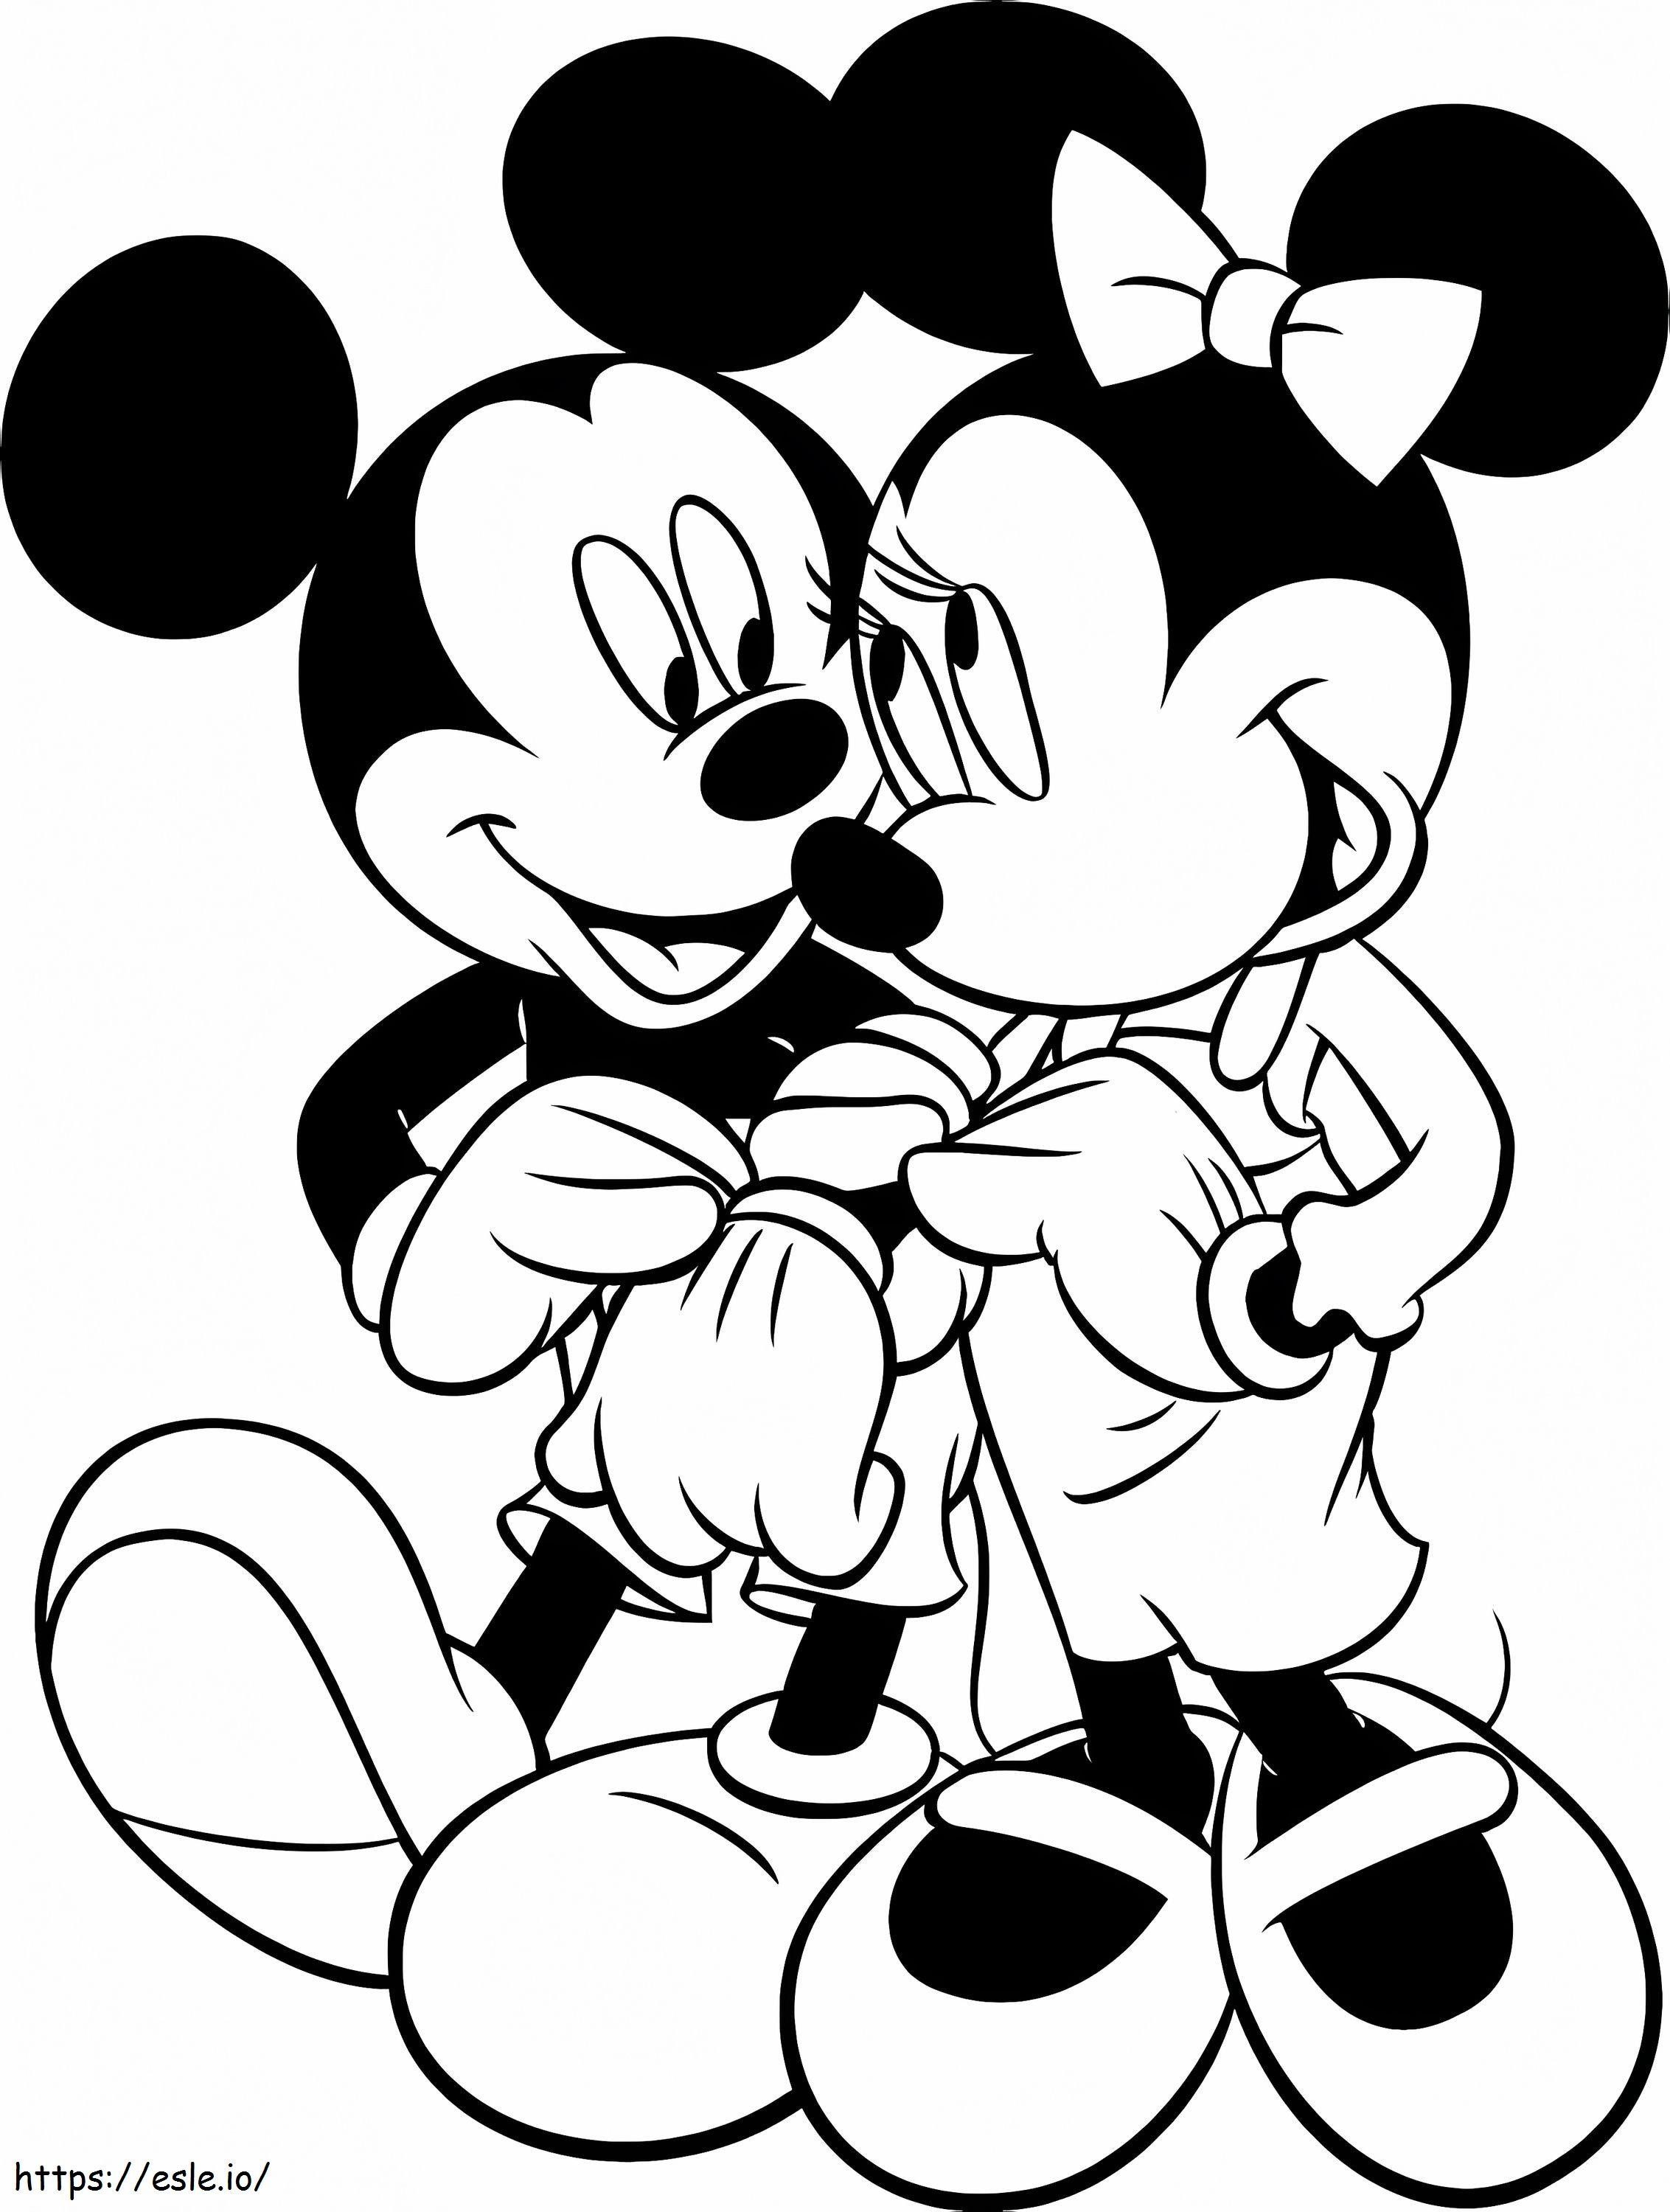 Mickey y Minnie Mouse San Valentín para colorear